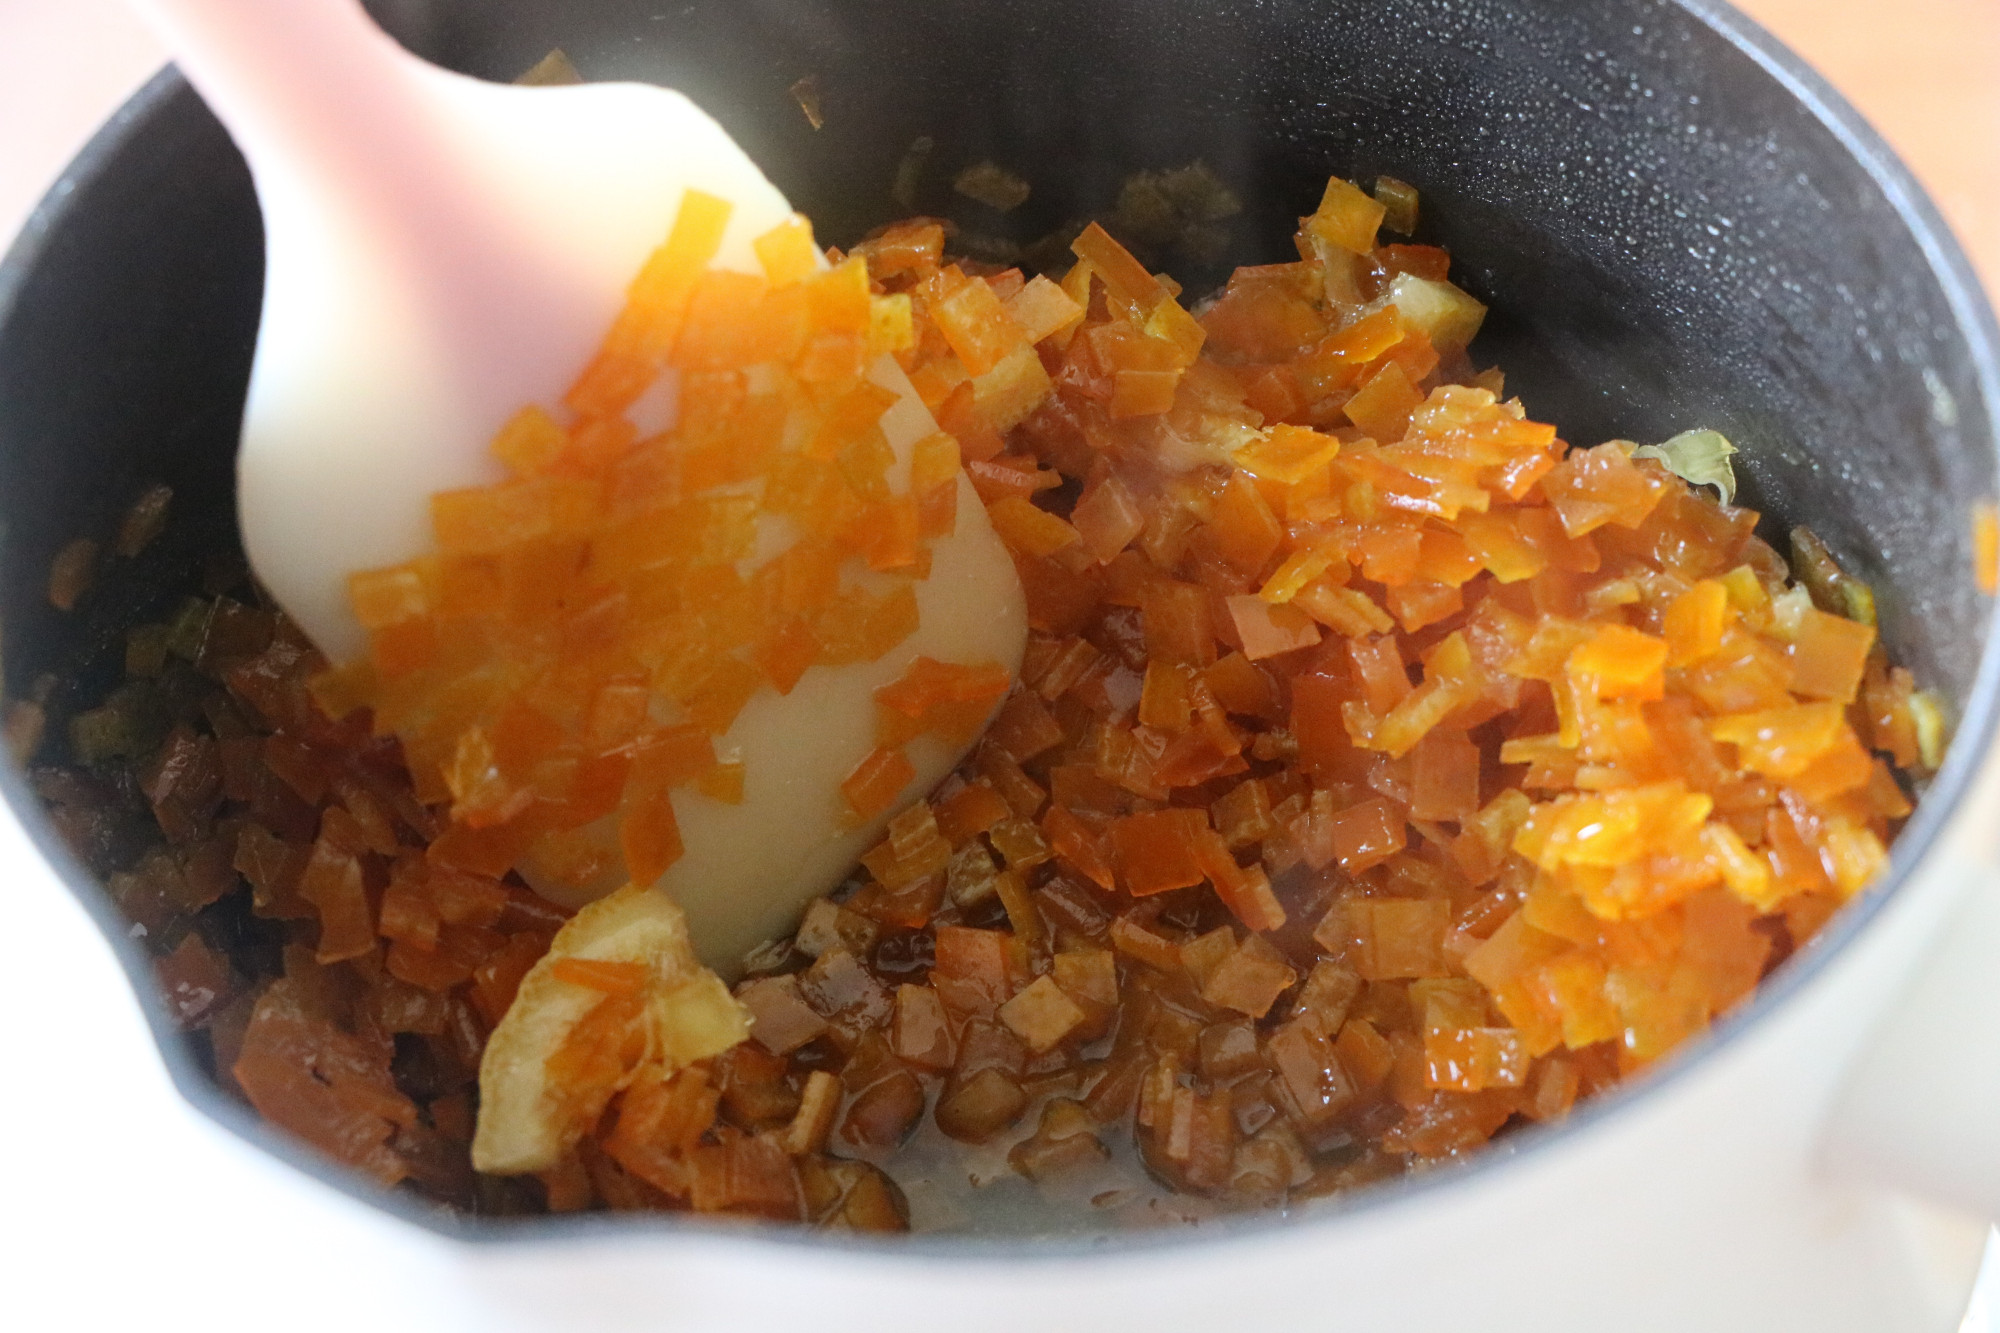 吃剩的橙子皮不要扔掉，简单加工一下，用处多多，胜过秋梨膏